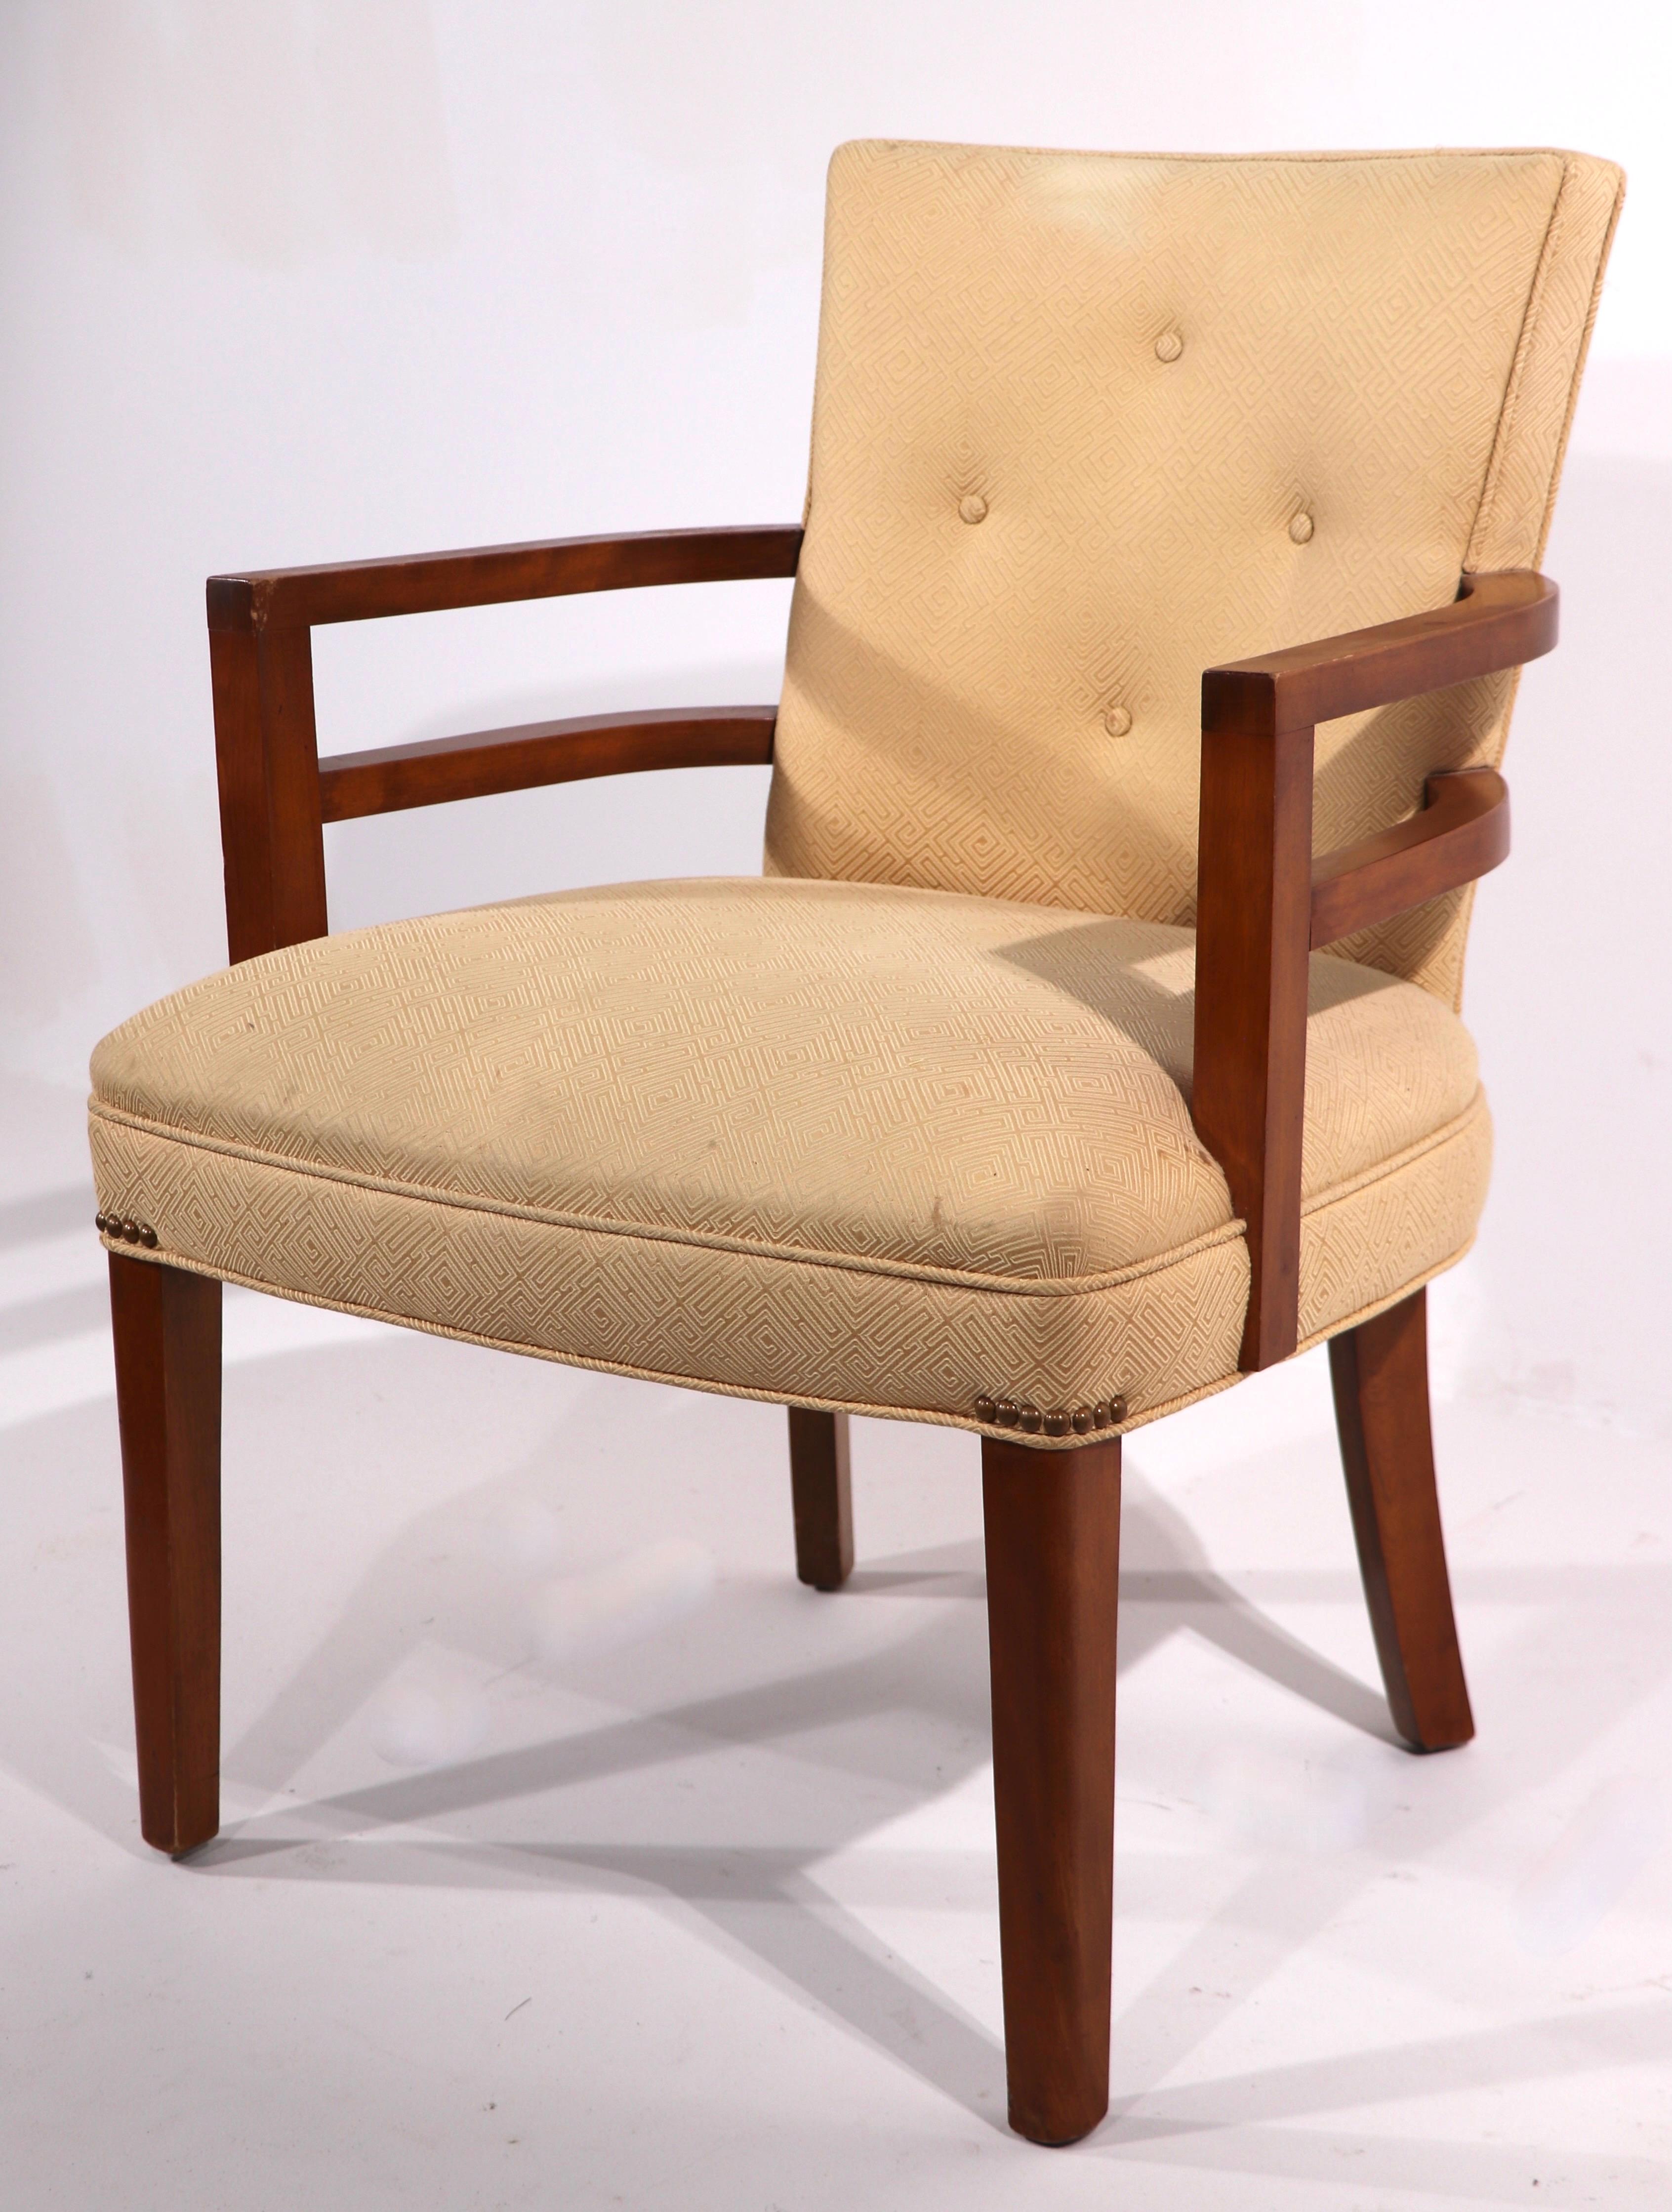 Klassischer Sessel aus dem Maschinenzeitalter mit umlaufenden Armen, gepolstertem Rücken und Sitz. Dieses Exemplar ist in sehr gutem, originalem Zustand, sauber und einsatzbereit und weist nur leichte kosmetische Abnutzungserscheinungen auf, die